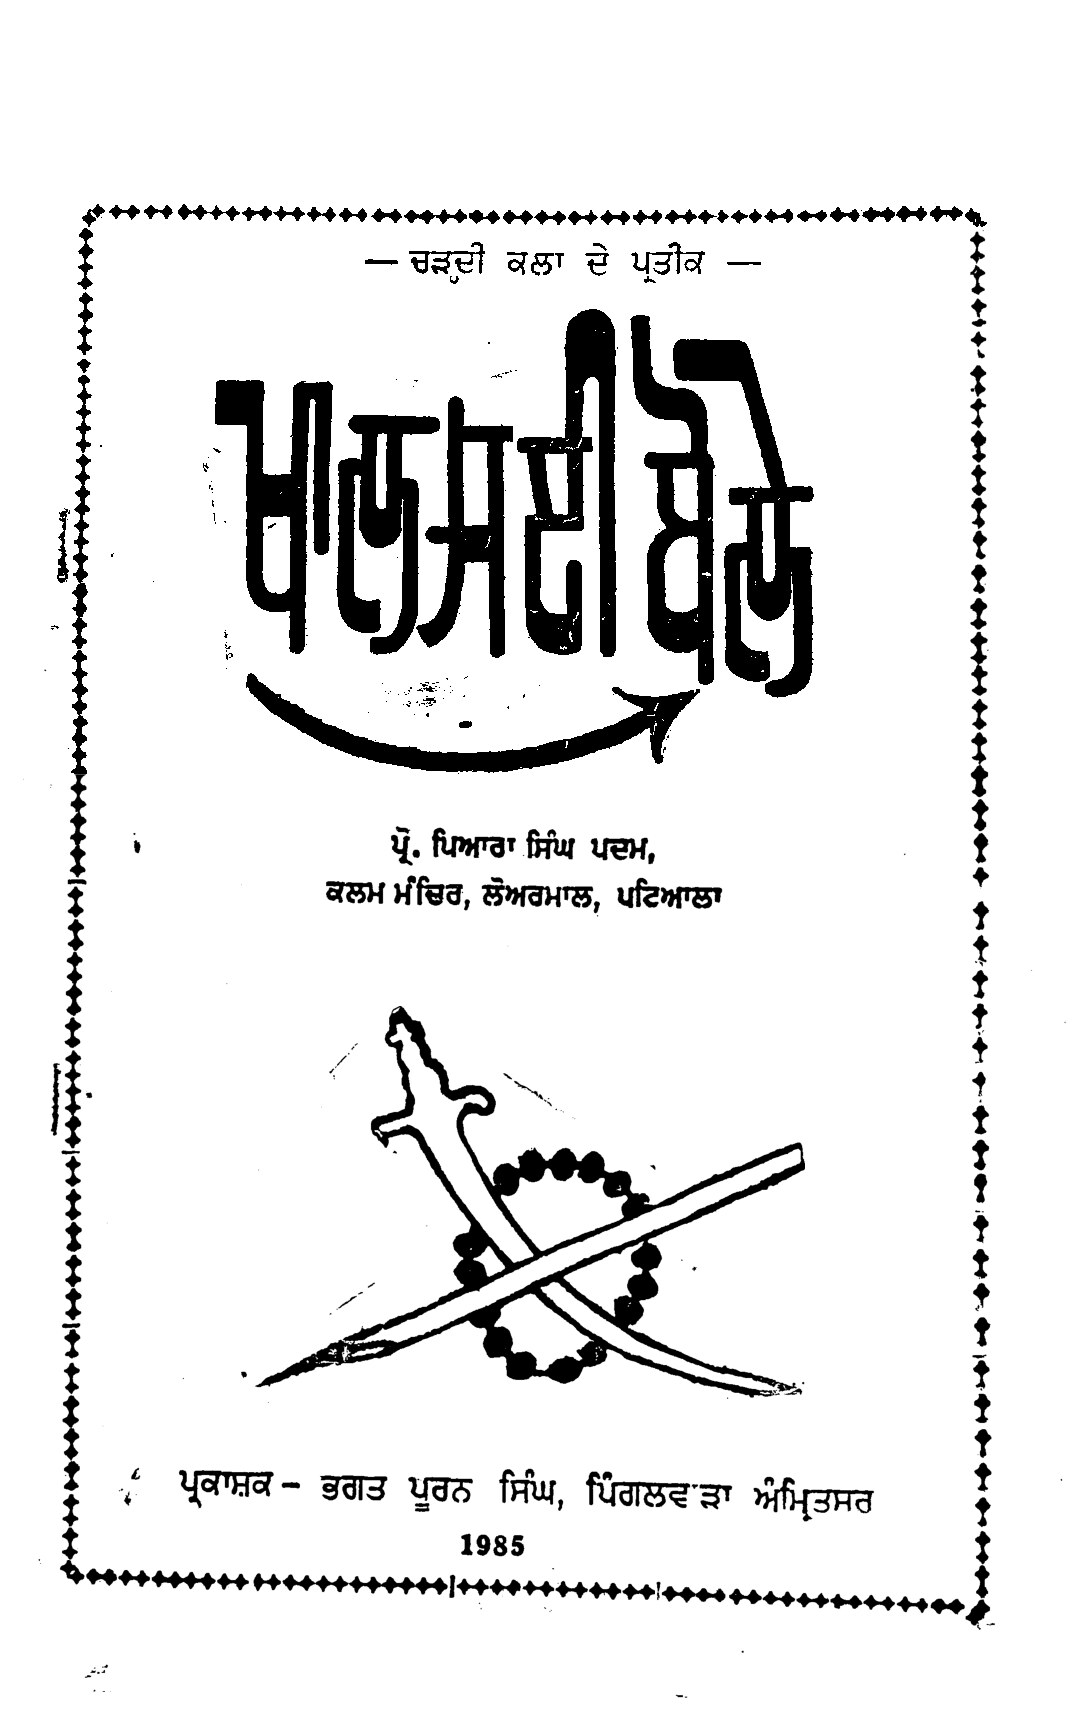 ਖਾਲਸਈ ਬੋਲੇ (ਸੰਨ 1985) - Khalsai Boley